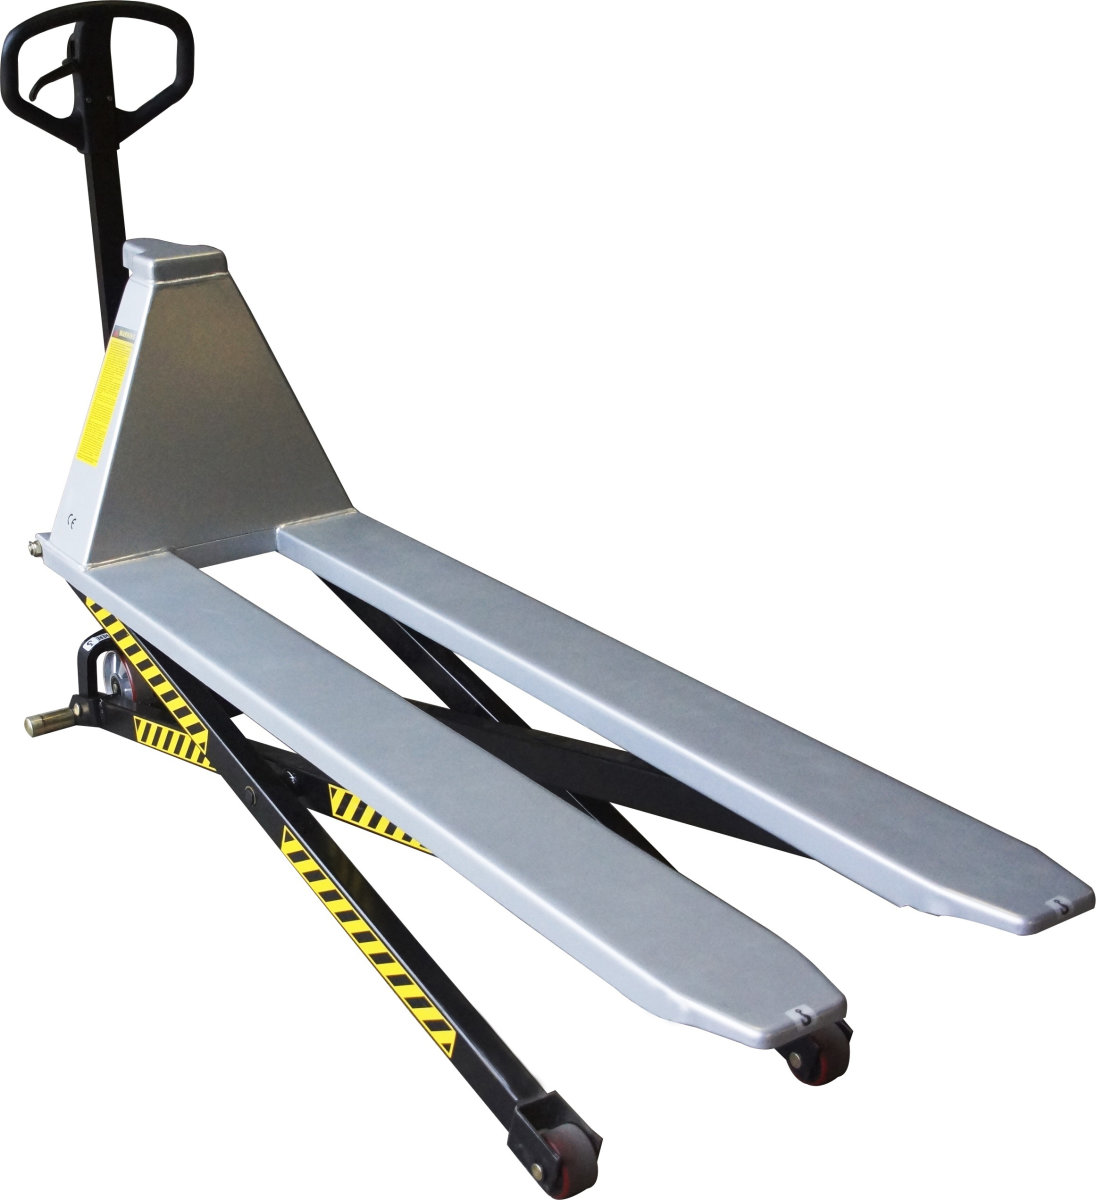 Silverstone sakseløfter, 1500 mm gafler